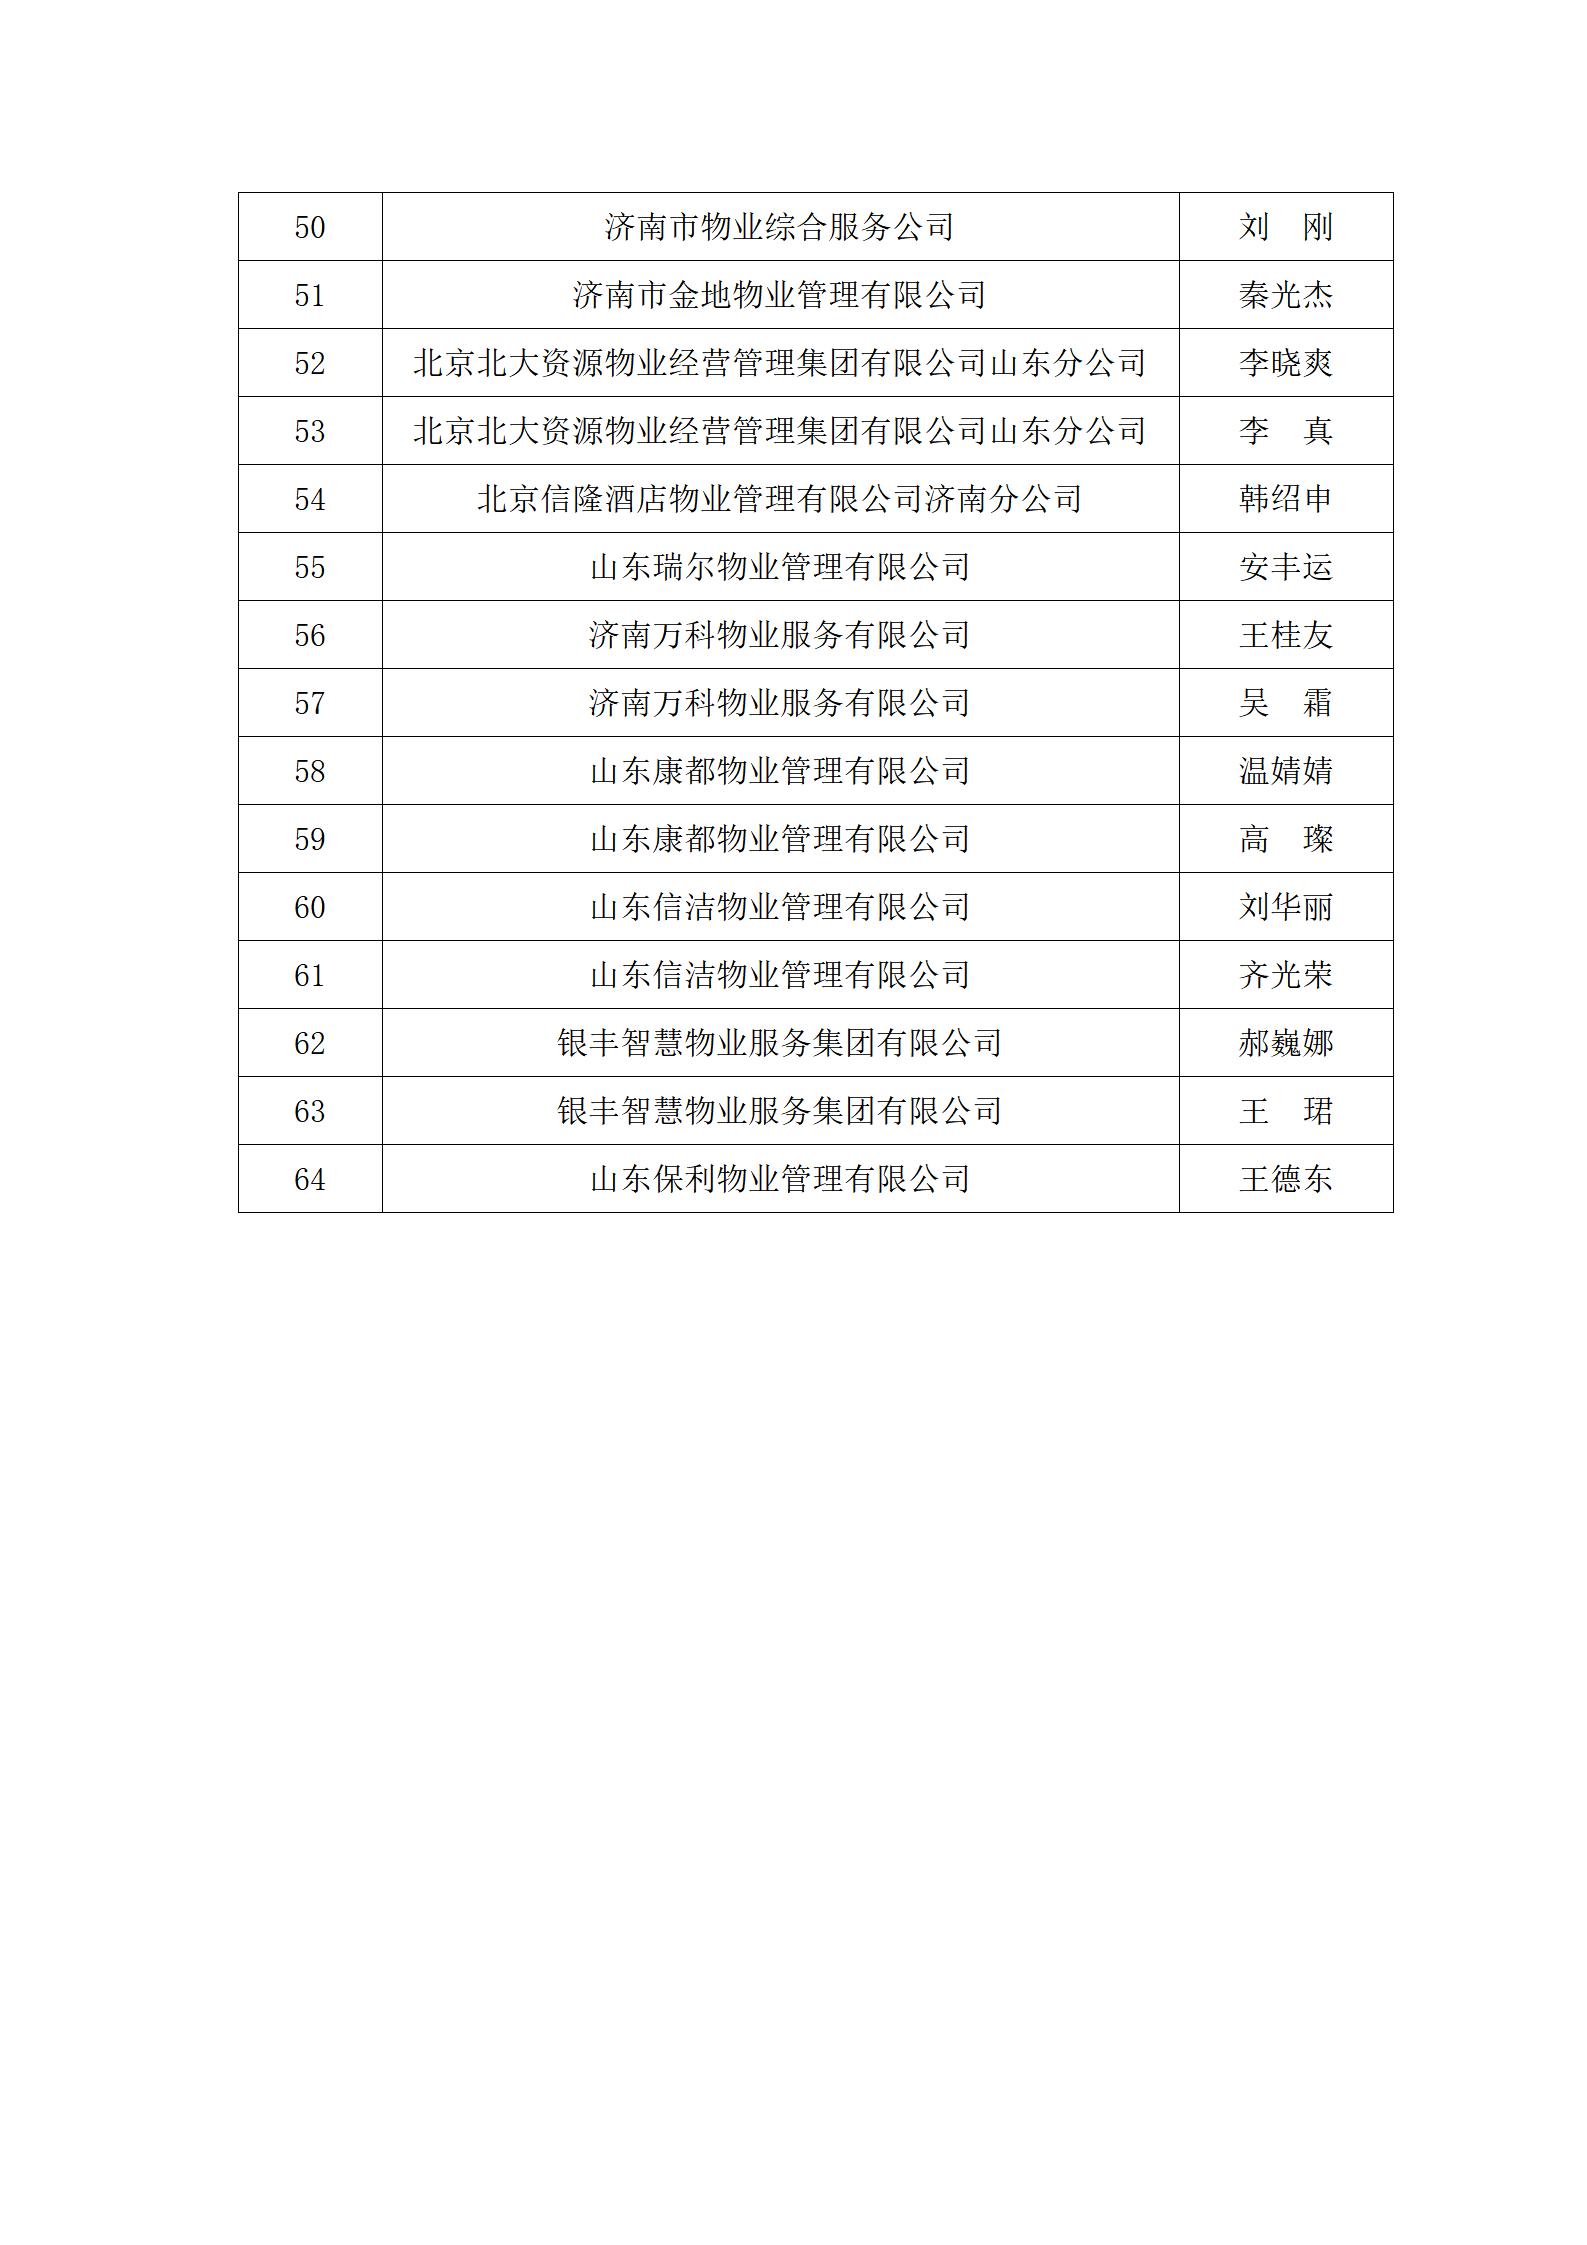 关于“明德杯”第六届济南市物业服务行业职业技能竞赛选手名单的公示_04